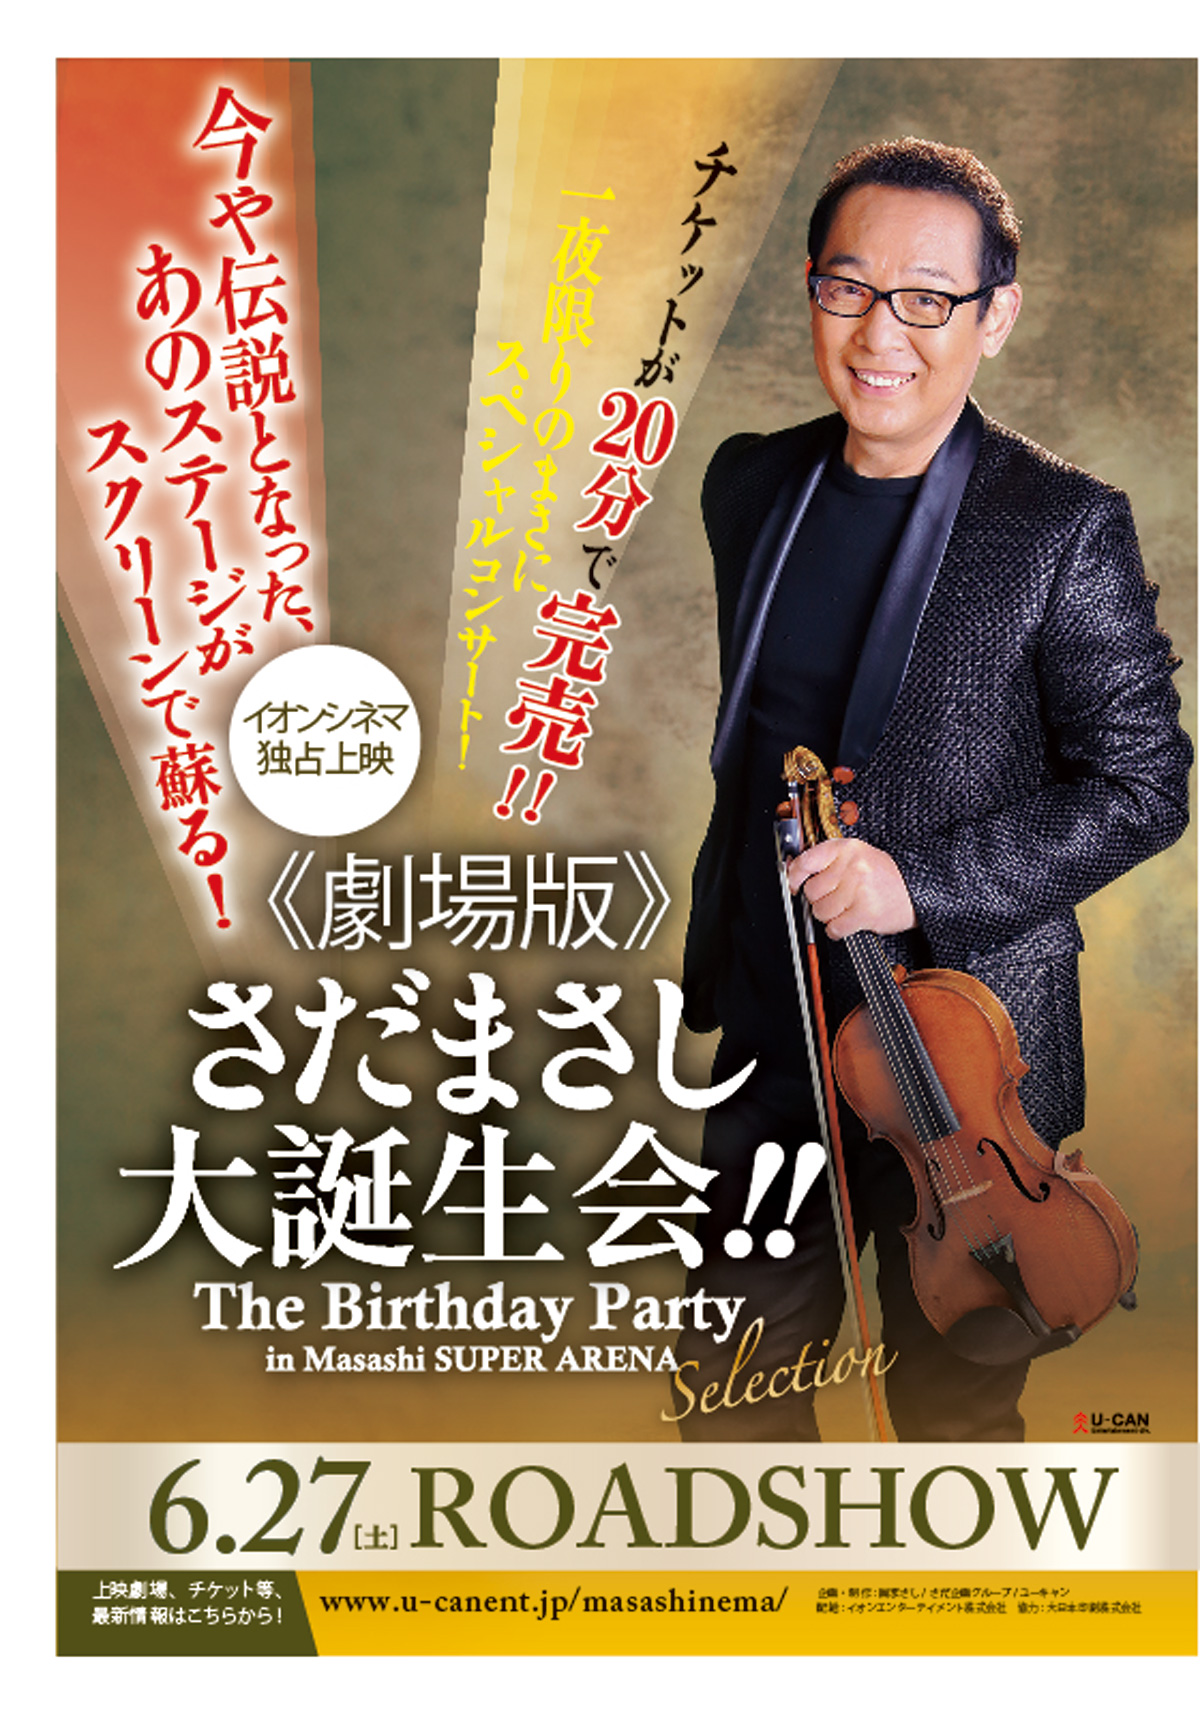 《劇場版》さだまさし大誕生会!! The Birthday Party in Masashi SUPER ARENA Selectionの画像